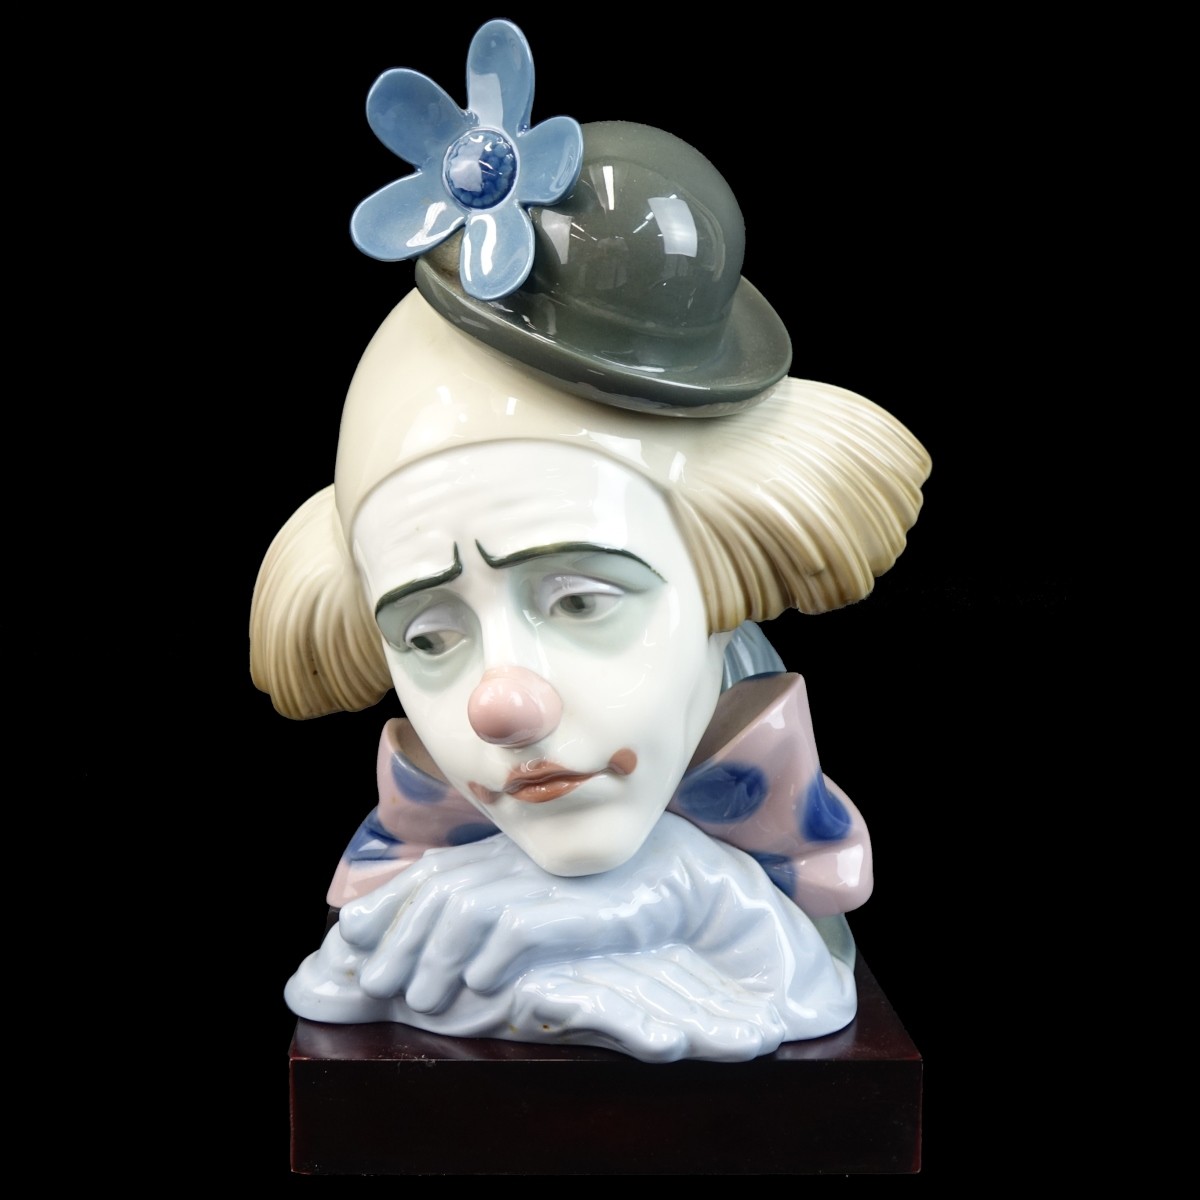 Lladro "Pensive Clown" Porcelain Figurine